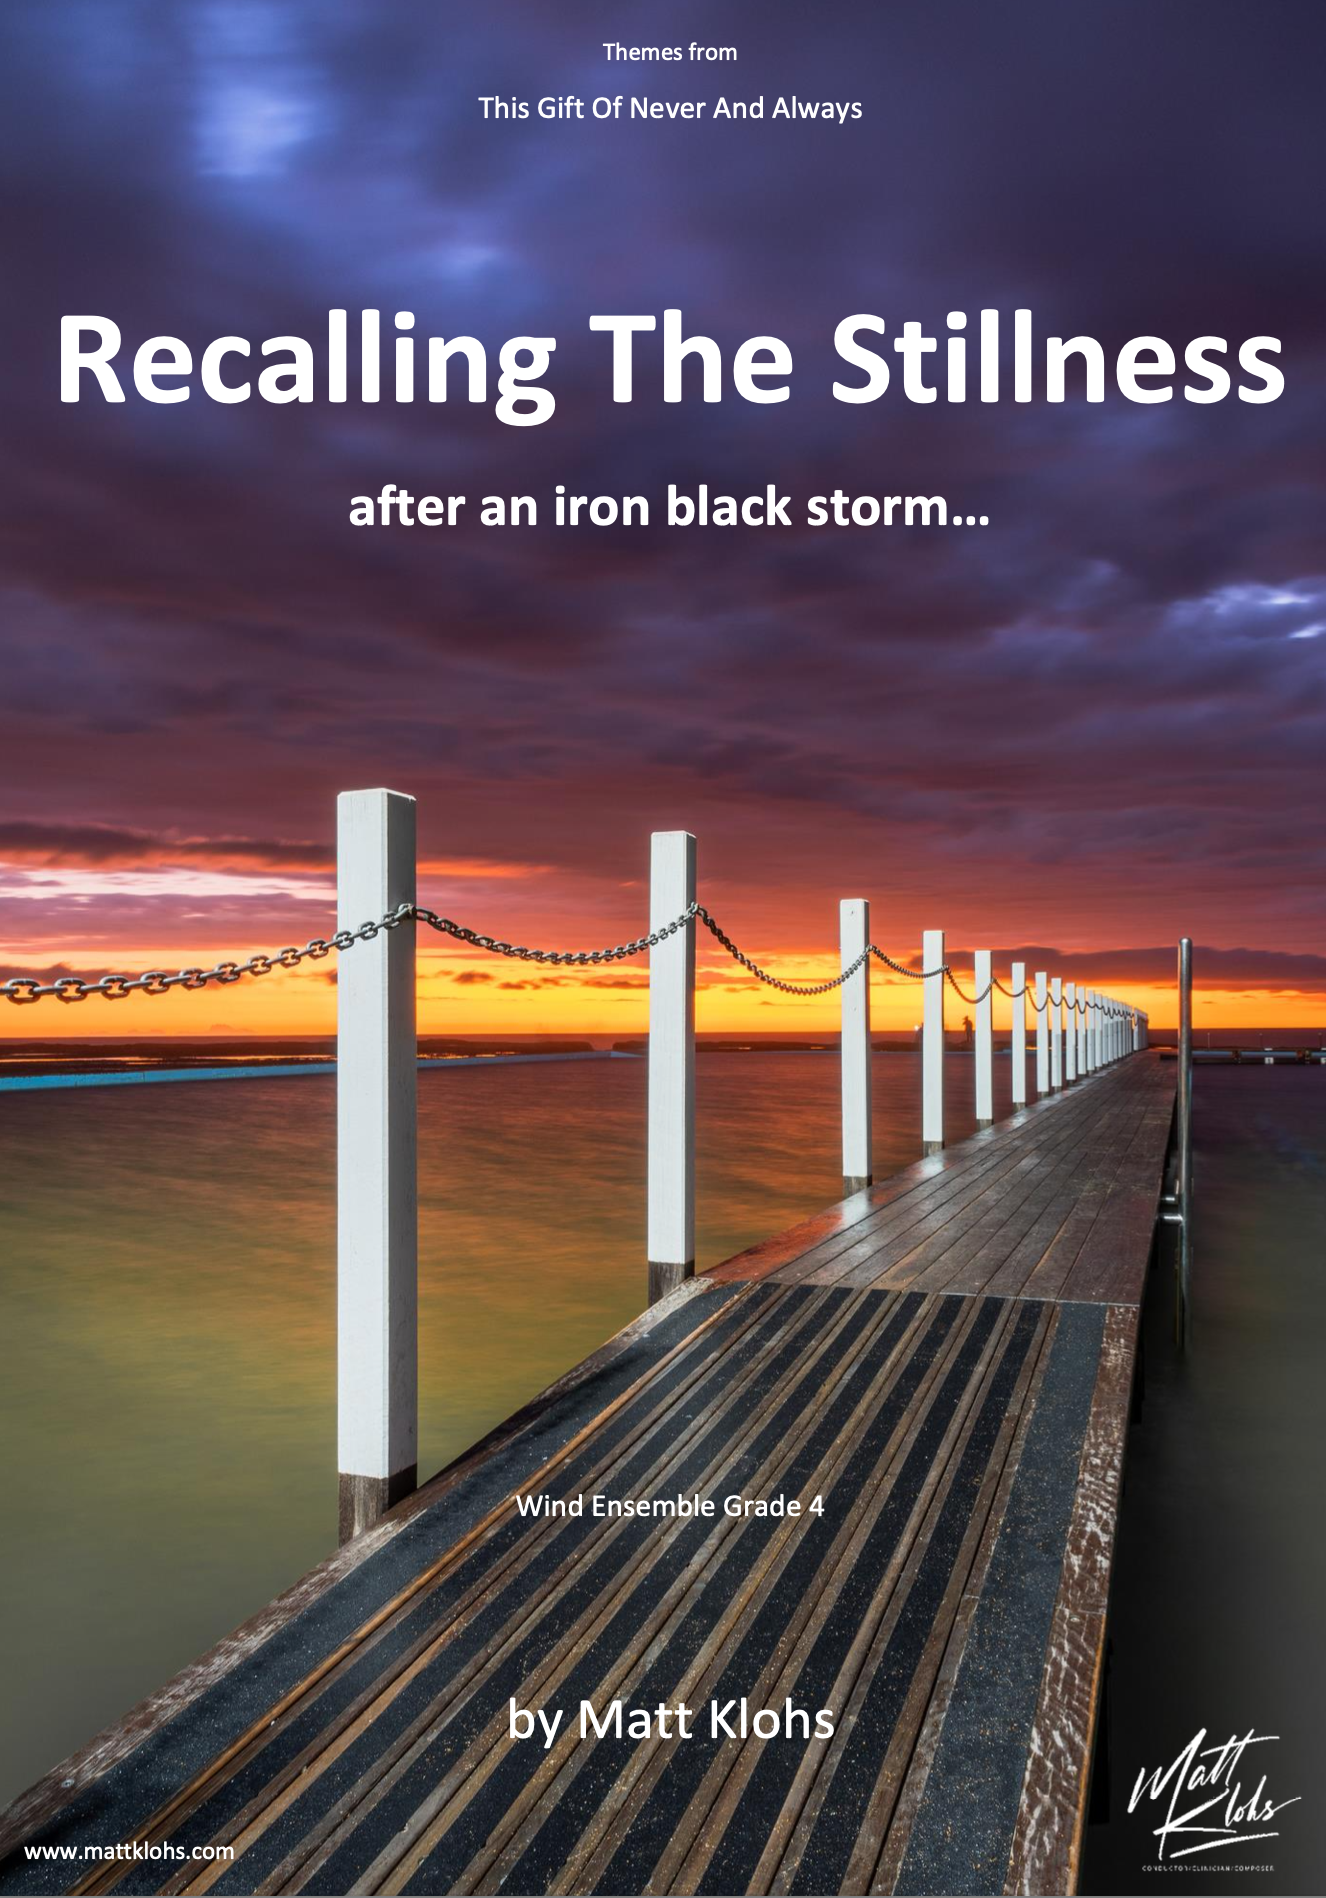 Recalling The Stillness by Matt Klohs